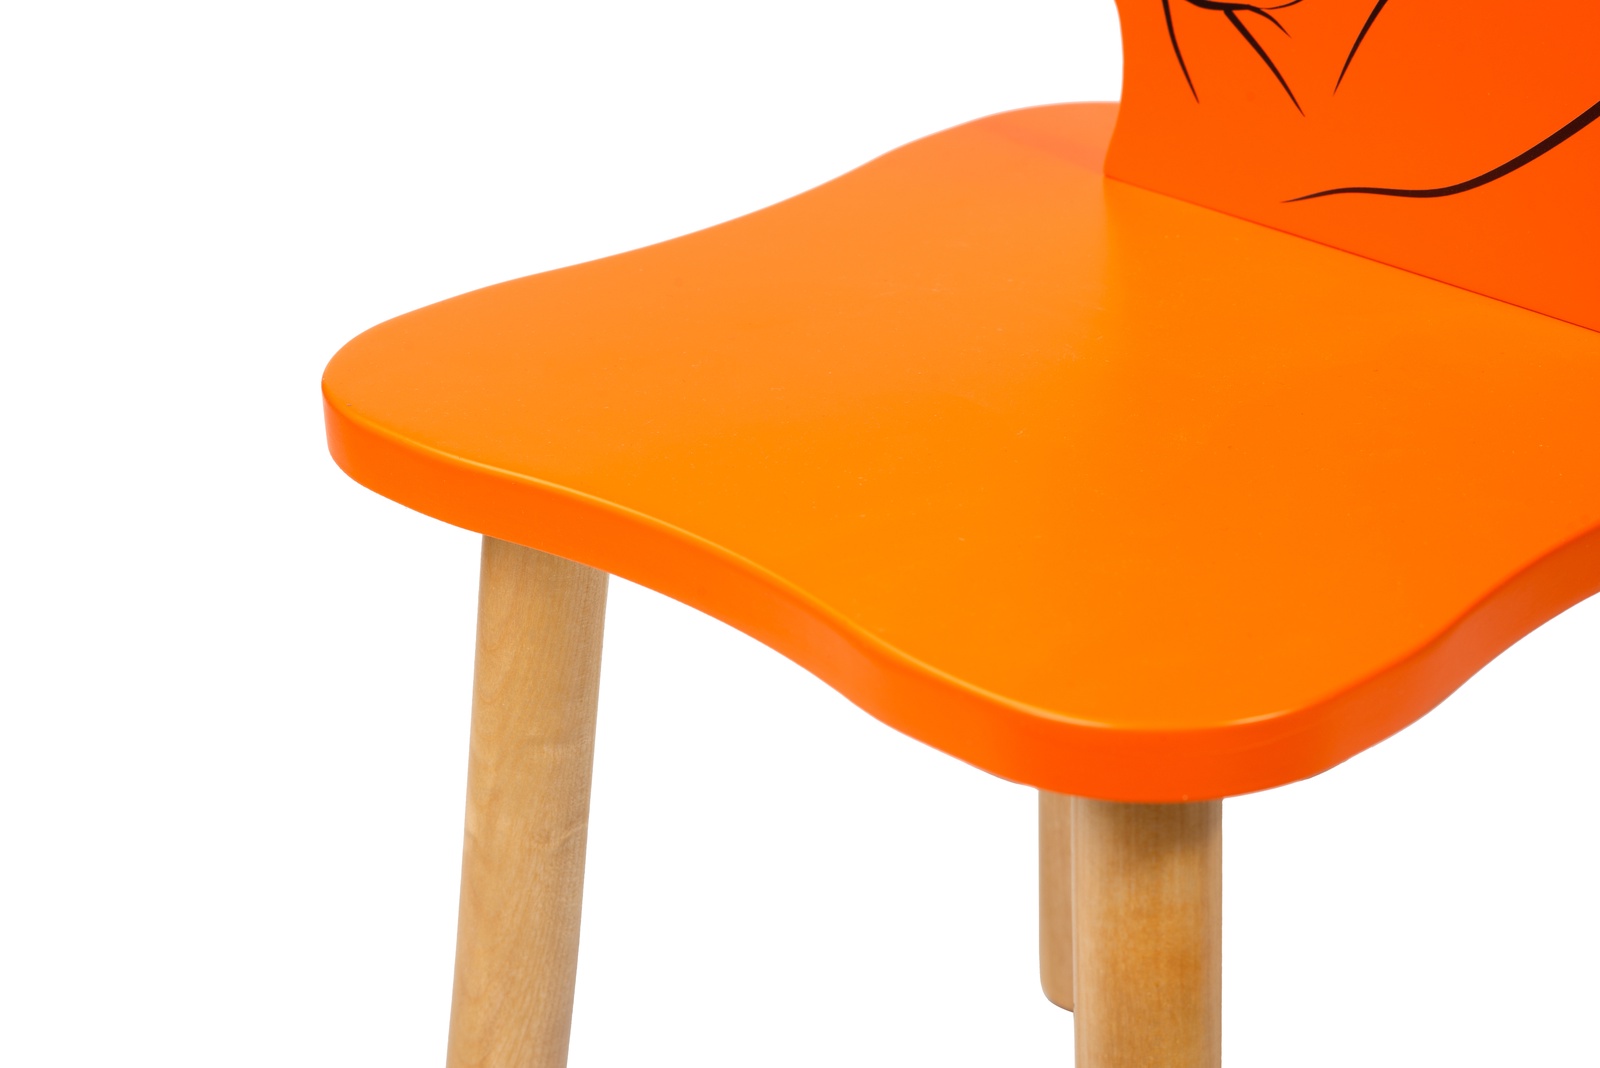 Оранжевый стул. Табурет оранжевый. Оранжевый стул у ребенка. Табуретки оранжевого цвета. Оранжевый столик